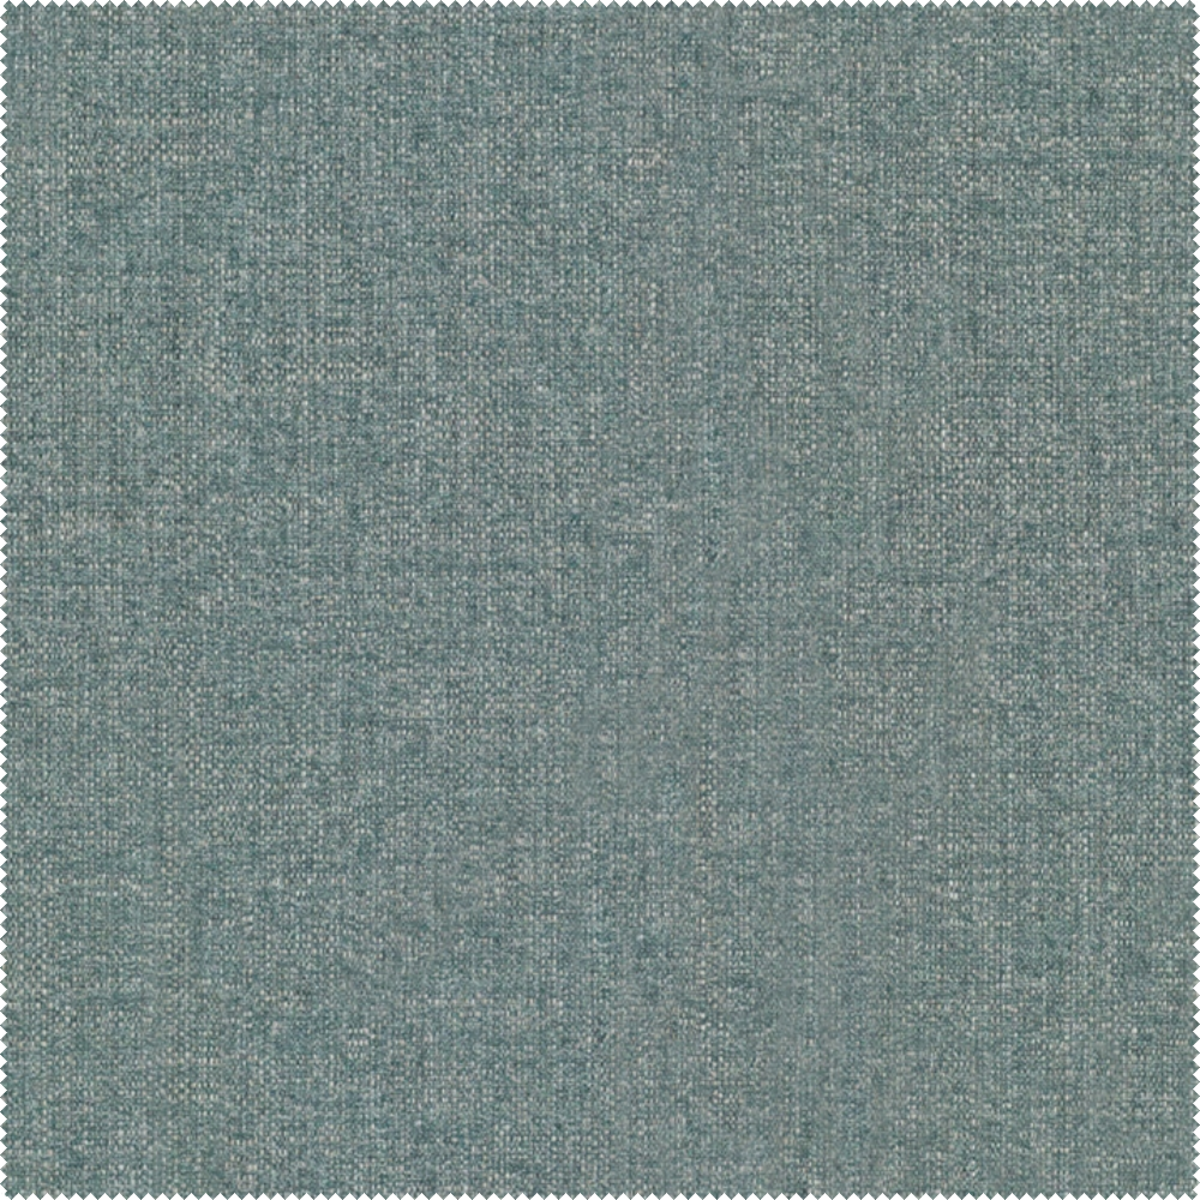 Morska tkanina Amaral 395 Aquaclean świetnie sprawdzi się na narożniku, kanapie czy fotelu.